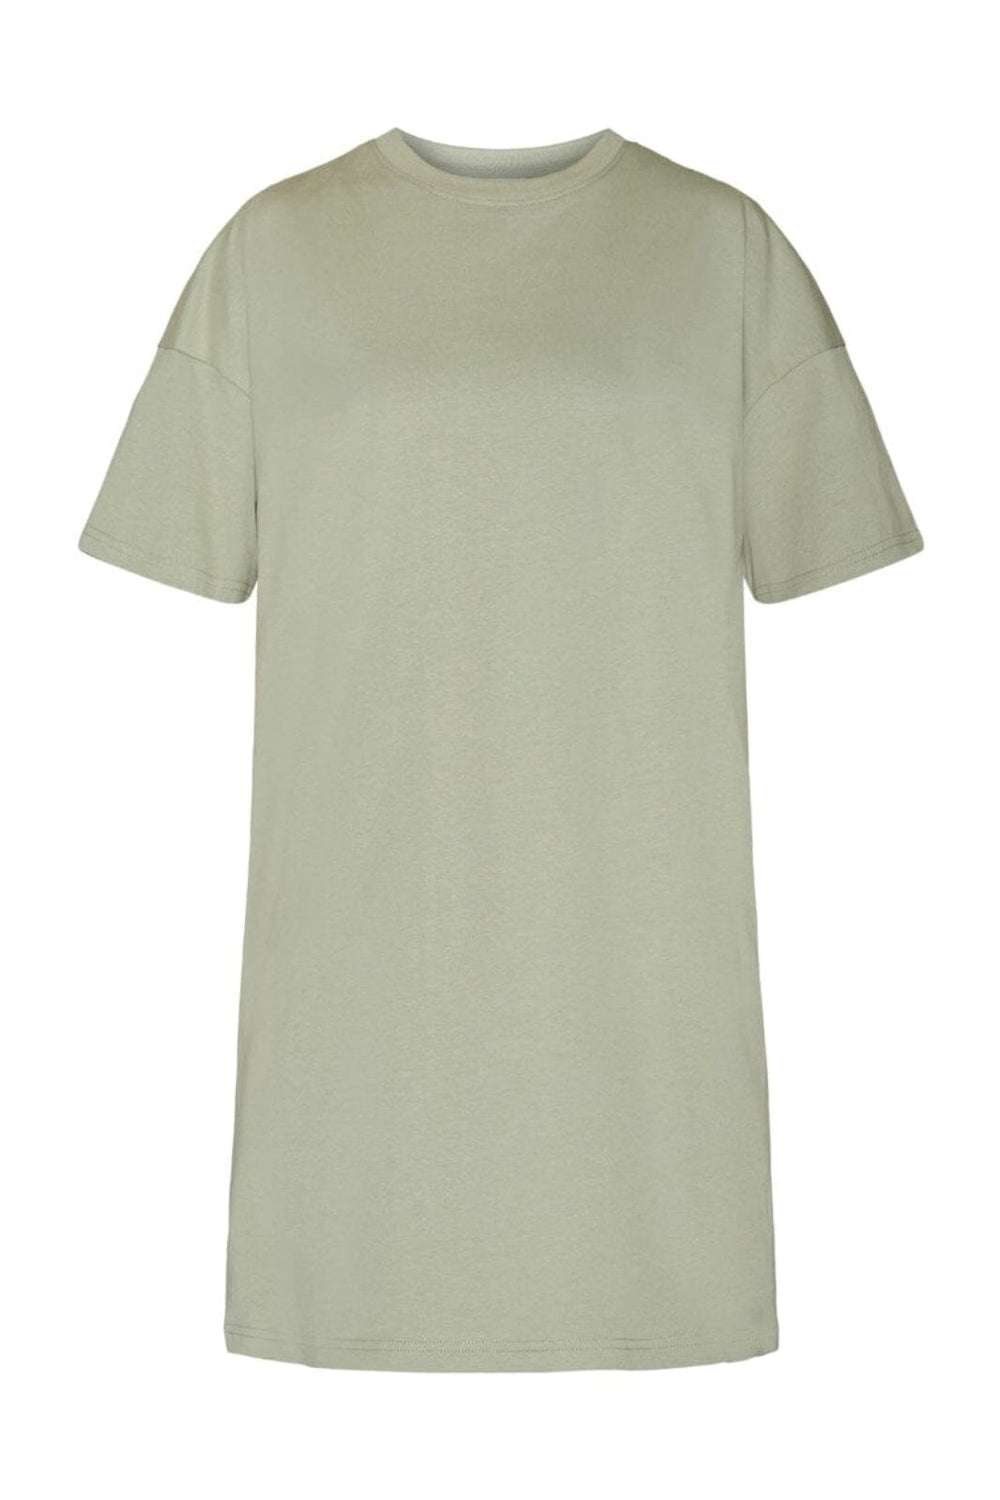 Sisters Point - Helga-Long - 812 L. Khaki/White T-shirts 